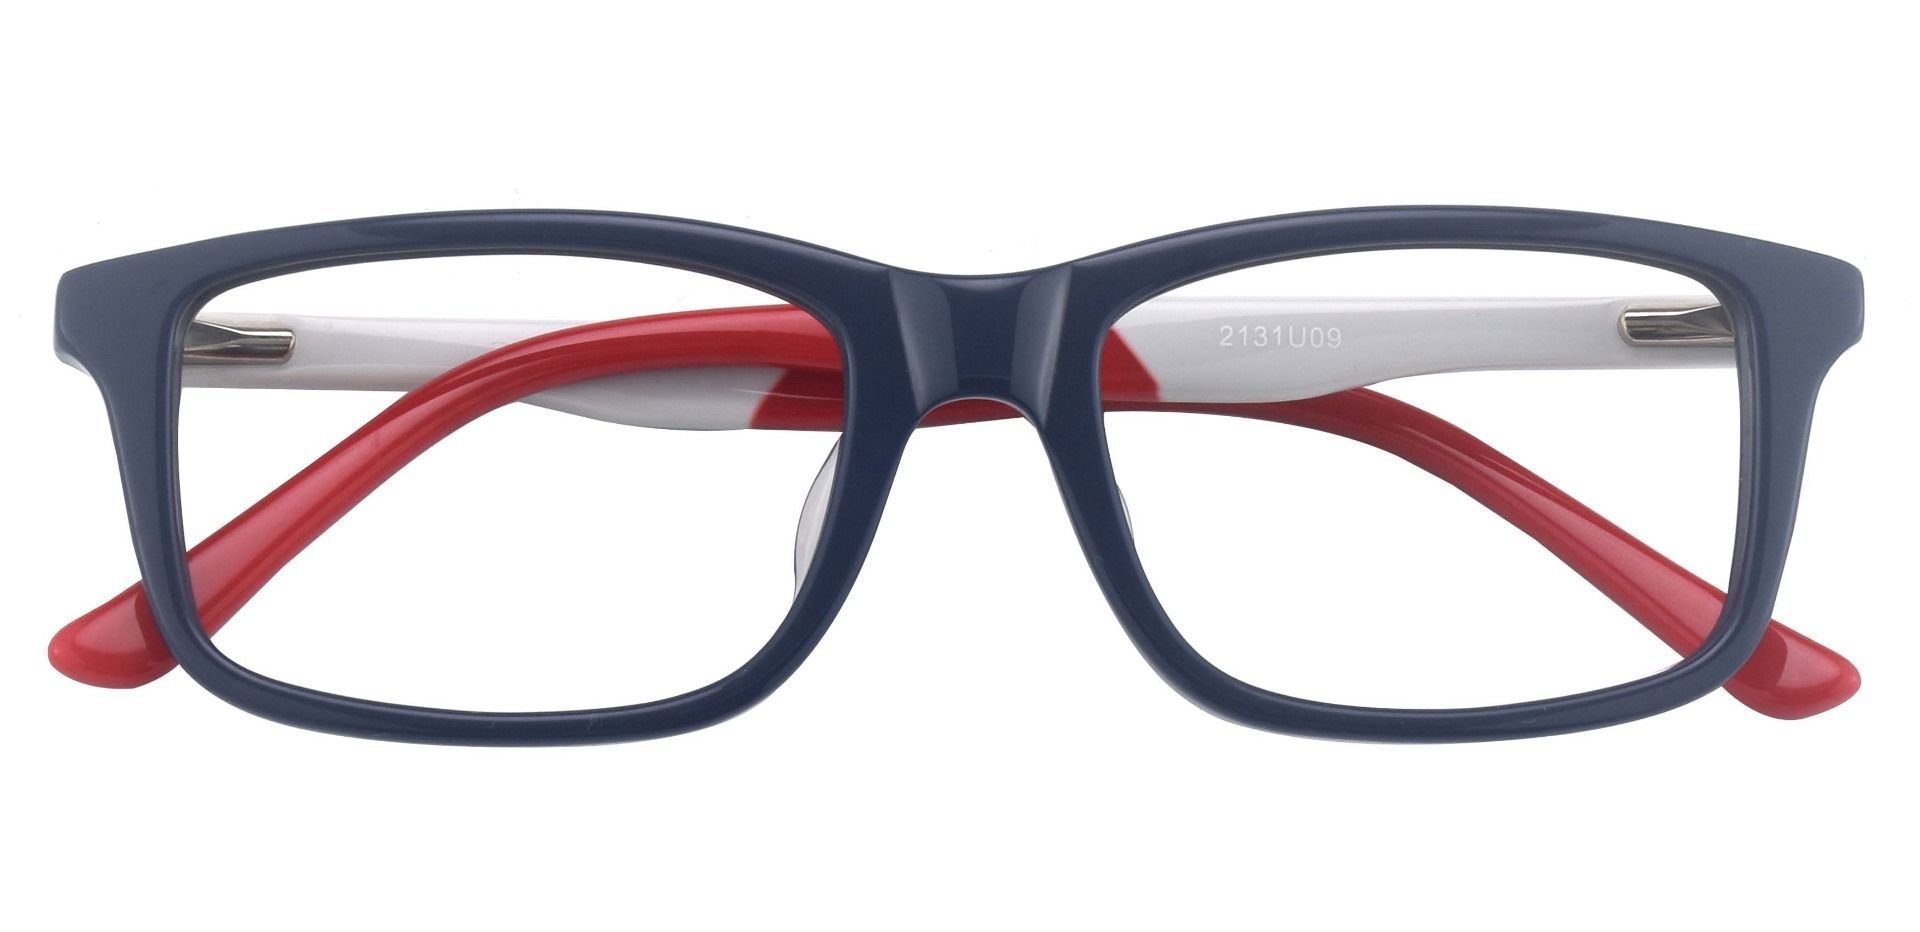 Titletown Rectangle Eyeglasses Frame - Blue White Red